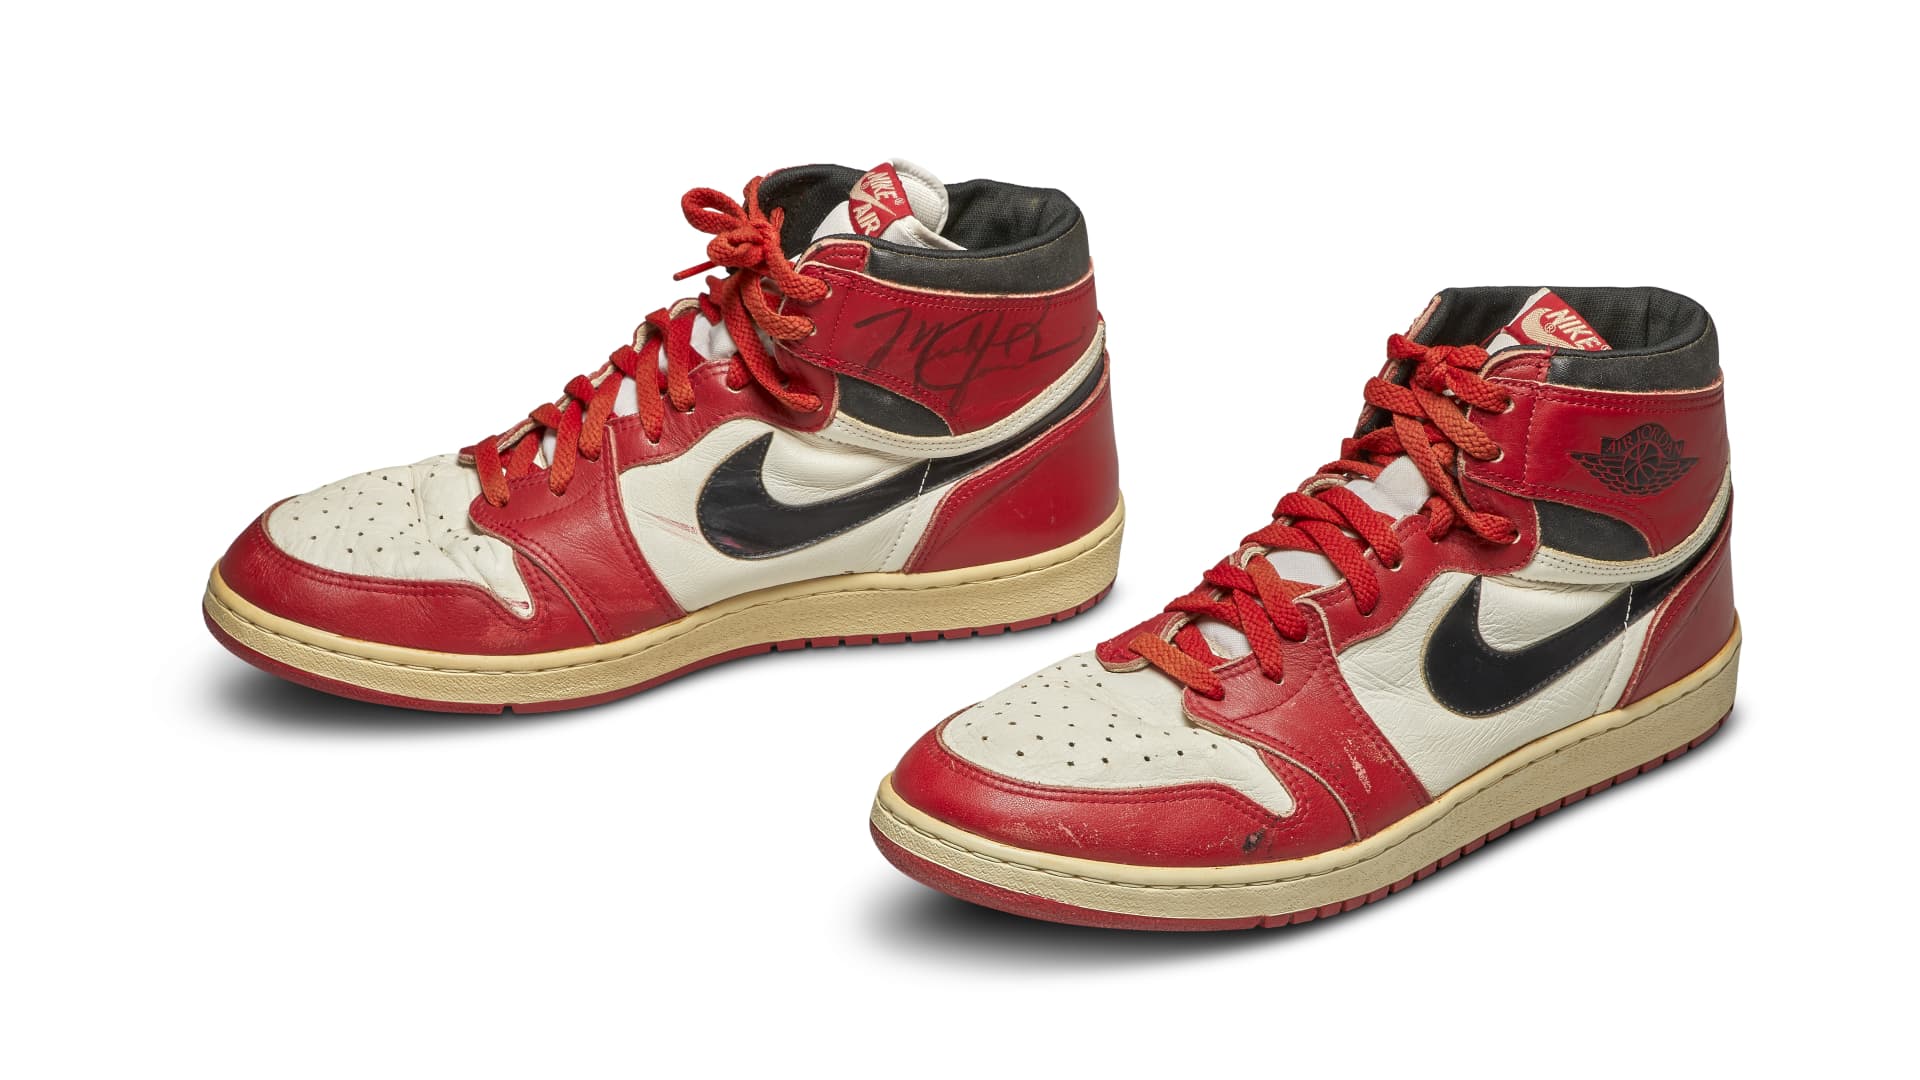 Air Jordan 1 Sneakers